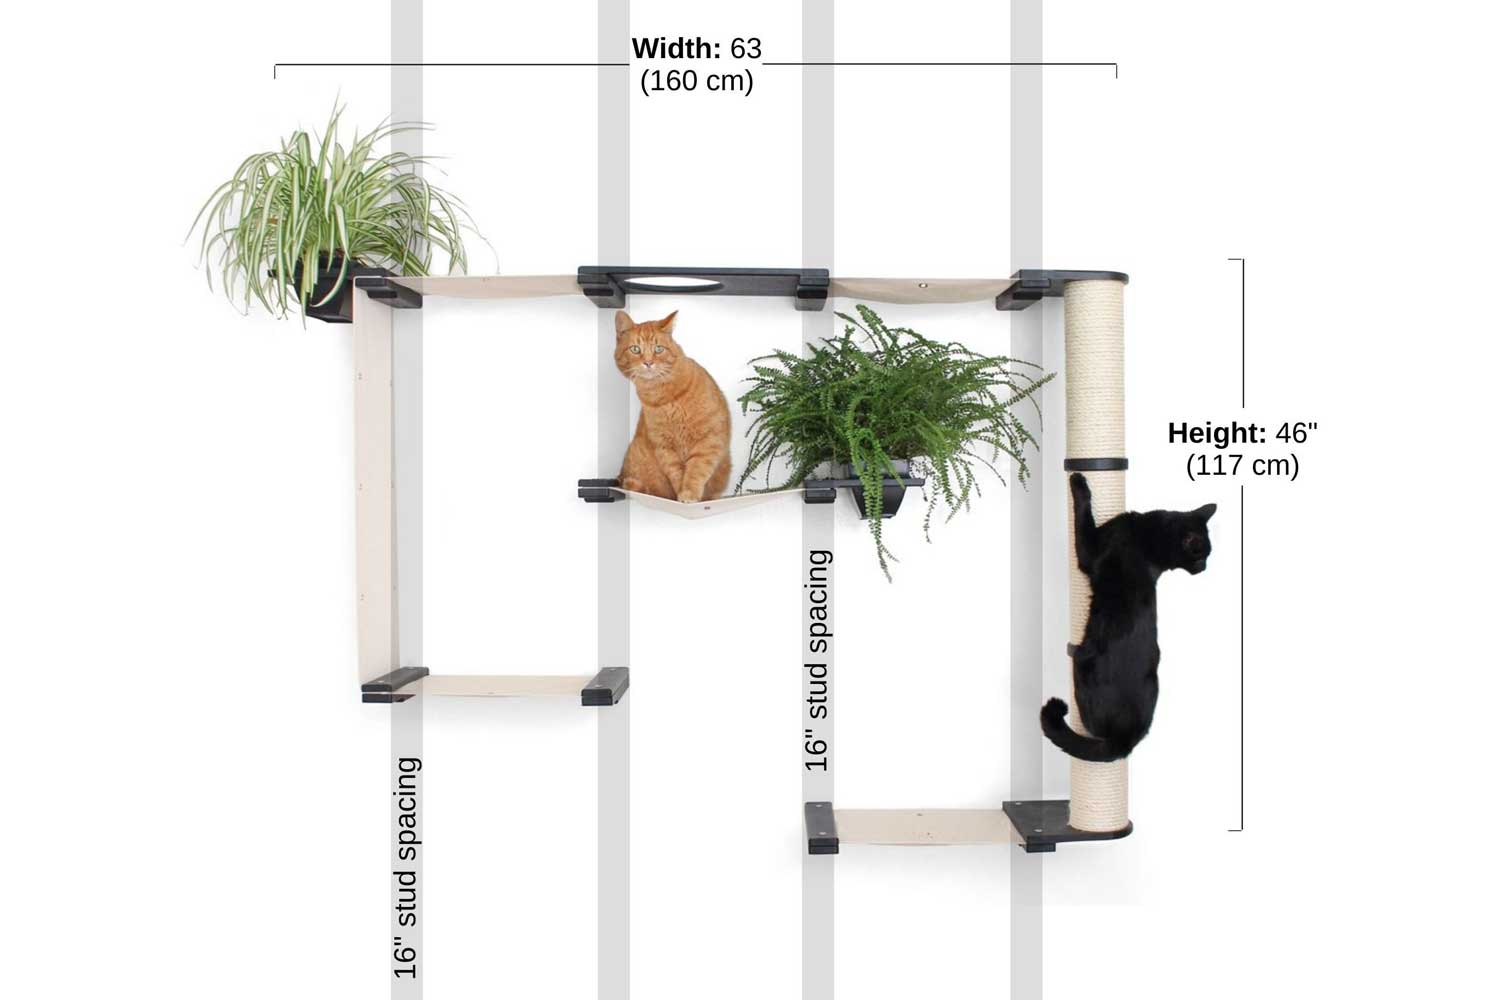 the Mini Gardens Cat Condo measurements